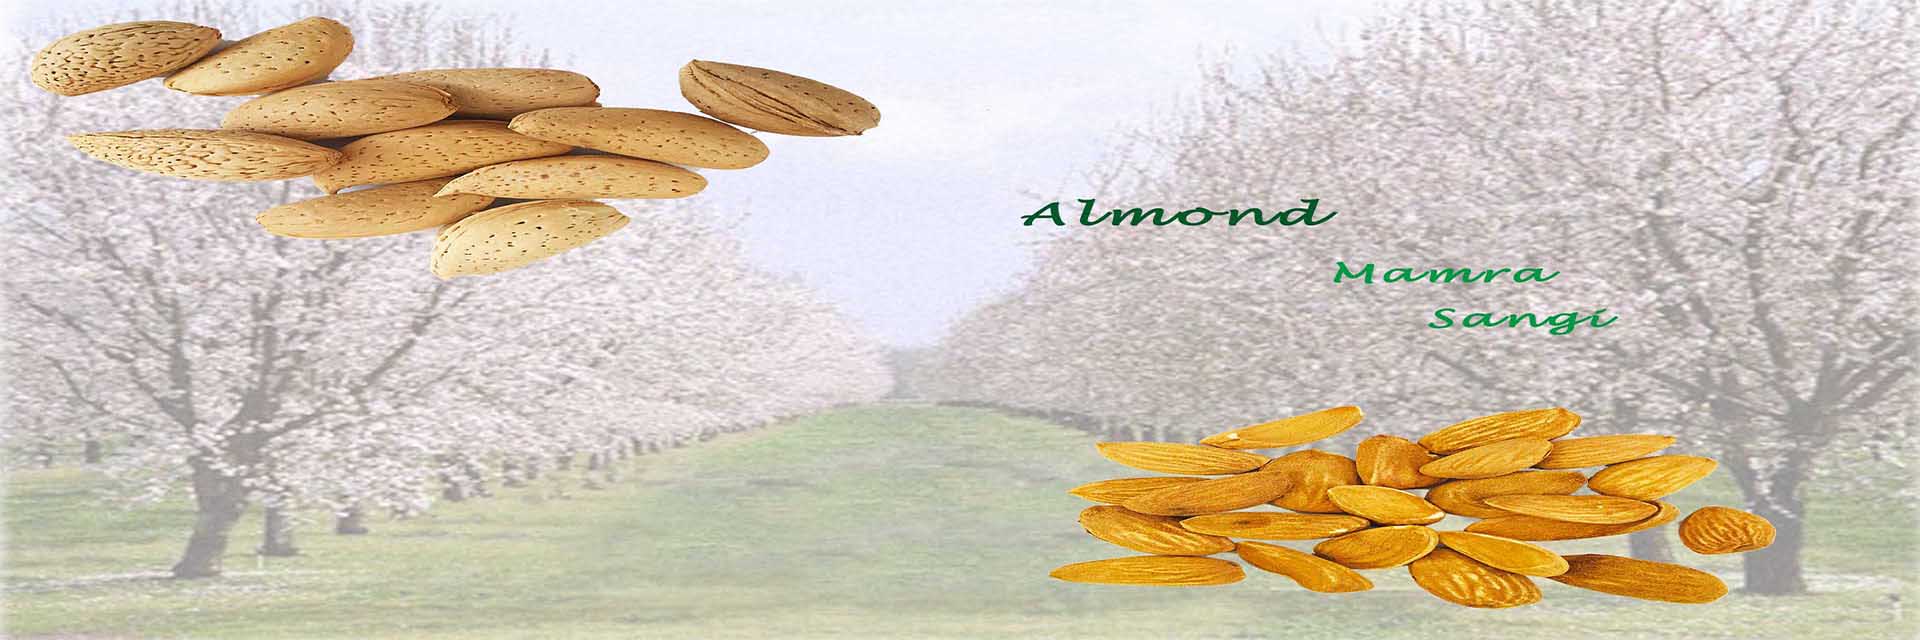 kernelo almond supplier